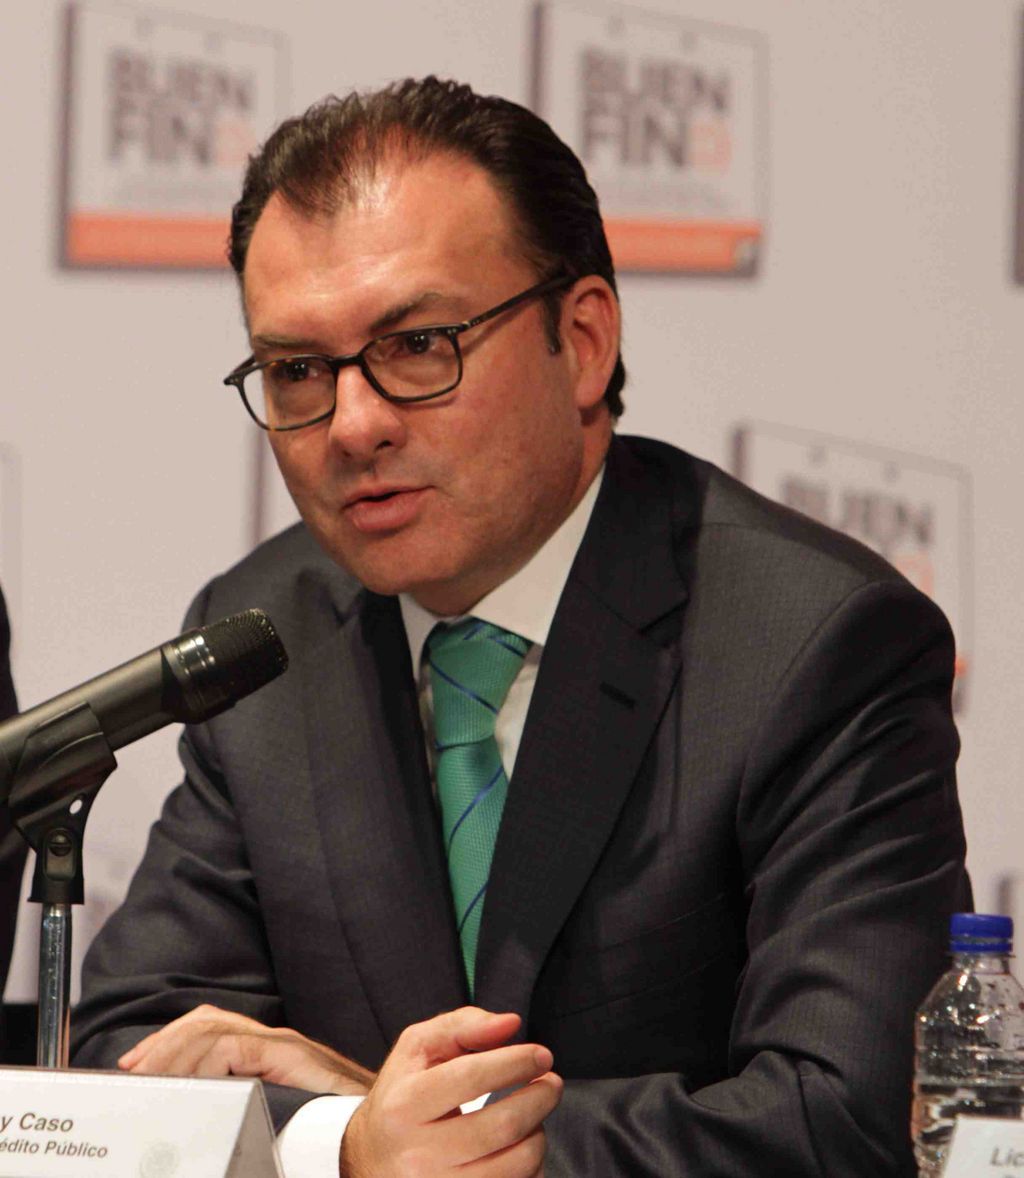 Petróleo. Luis Videgaray rechazó que se esté planeando un recorte al gasto público derivado de una menor producción de crudo.